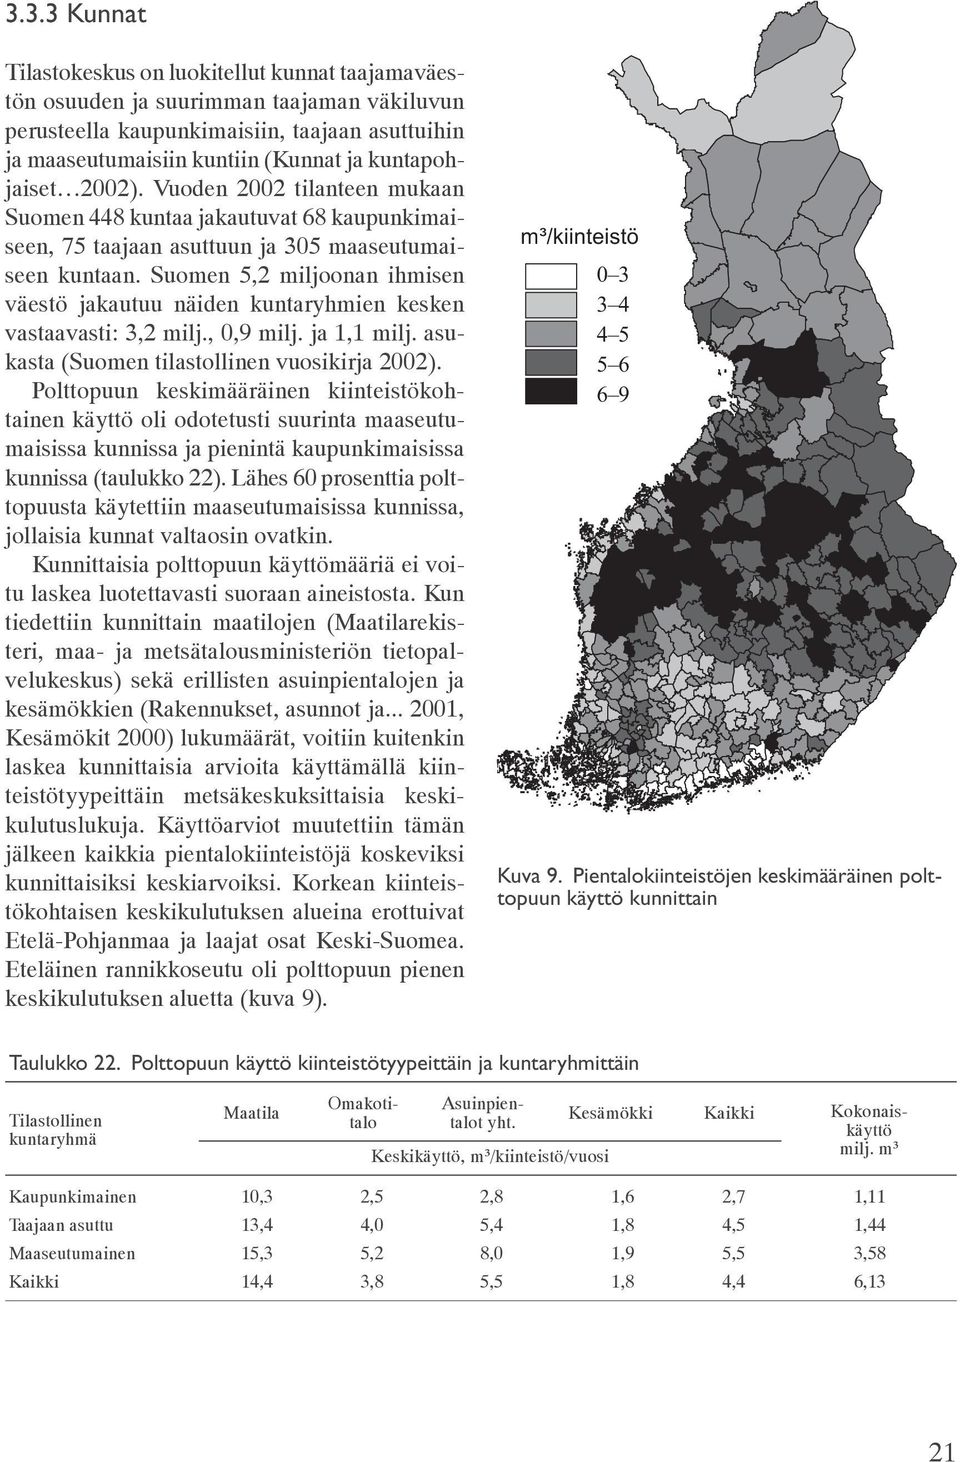 Suomen 5,2 miljoonan ihmisen väestö jakautuu näiden kuntaryhmien kesken vastaavasti: 3,2 milj., 0,9 milj. ja 1,1 milj. asukasta (Suomen tilastollinen vuosikirja 2002).